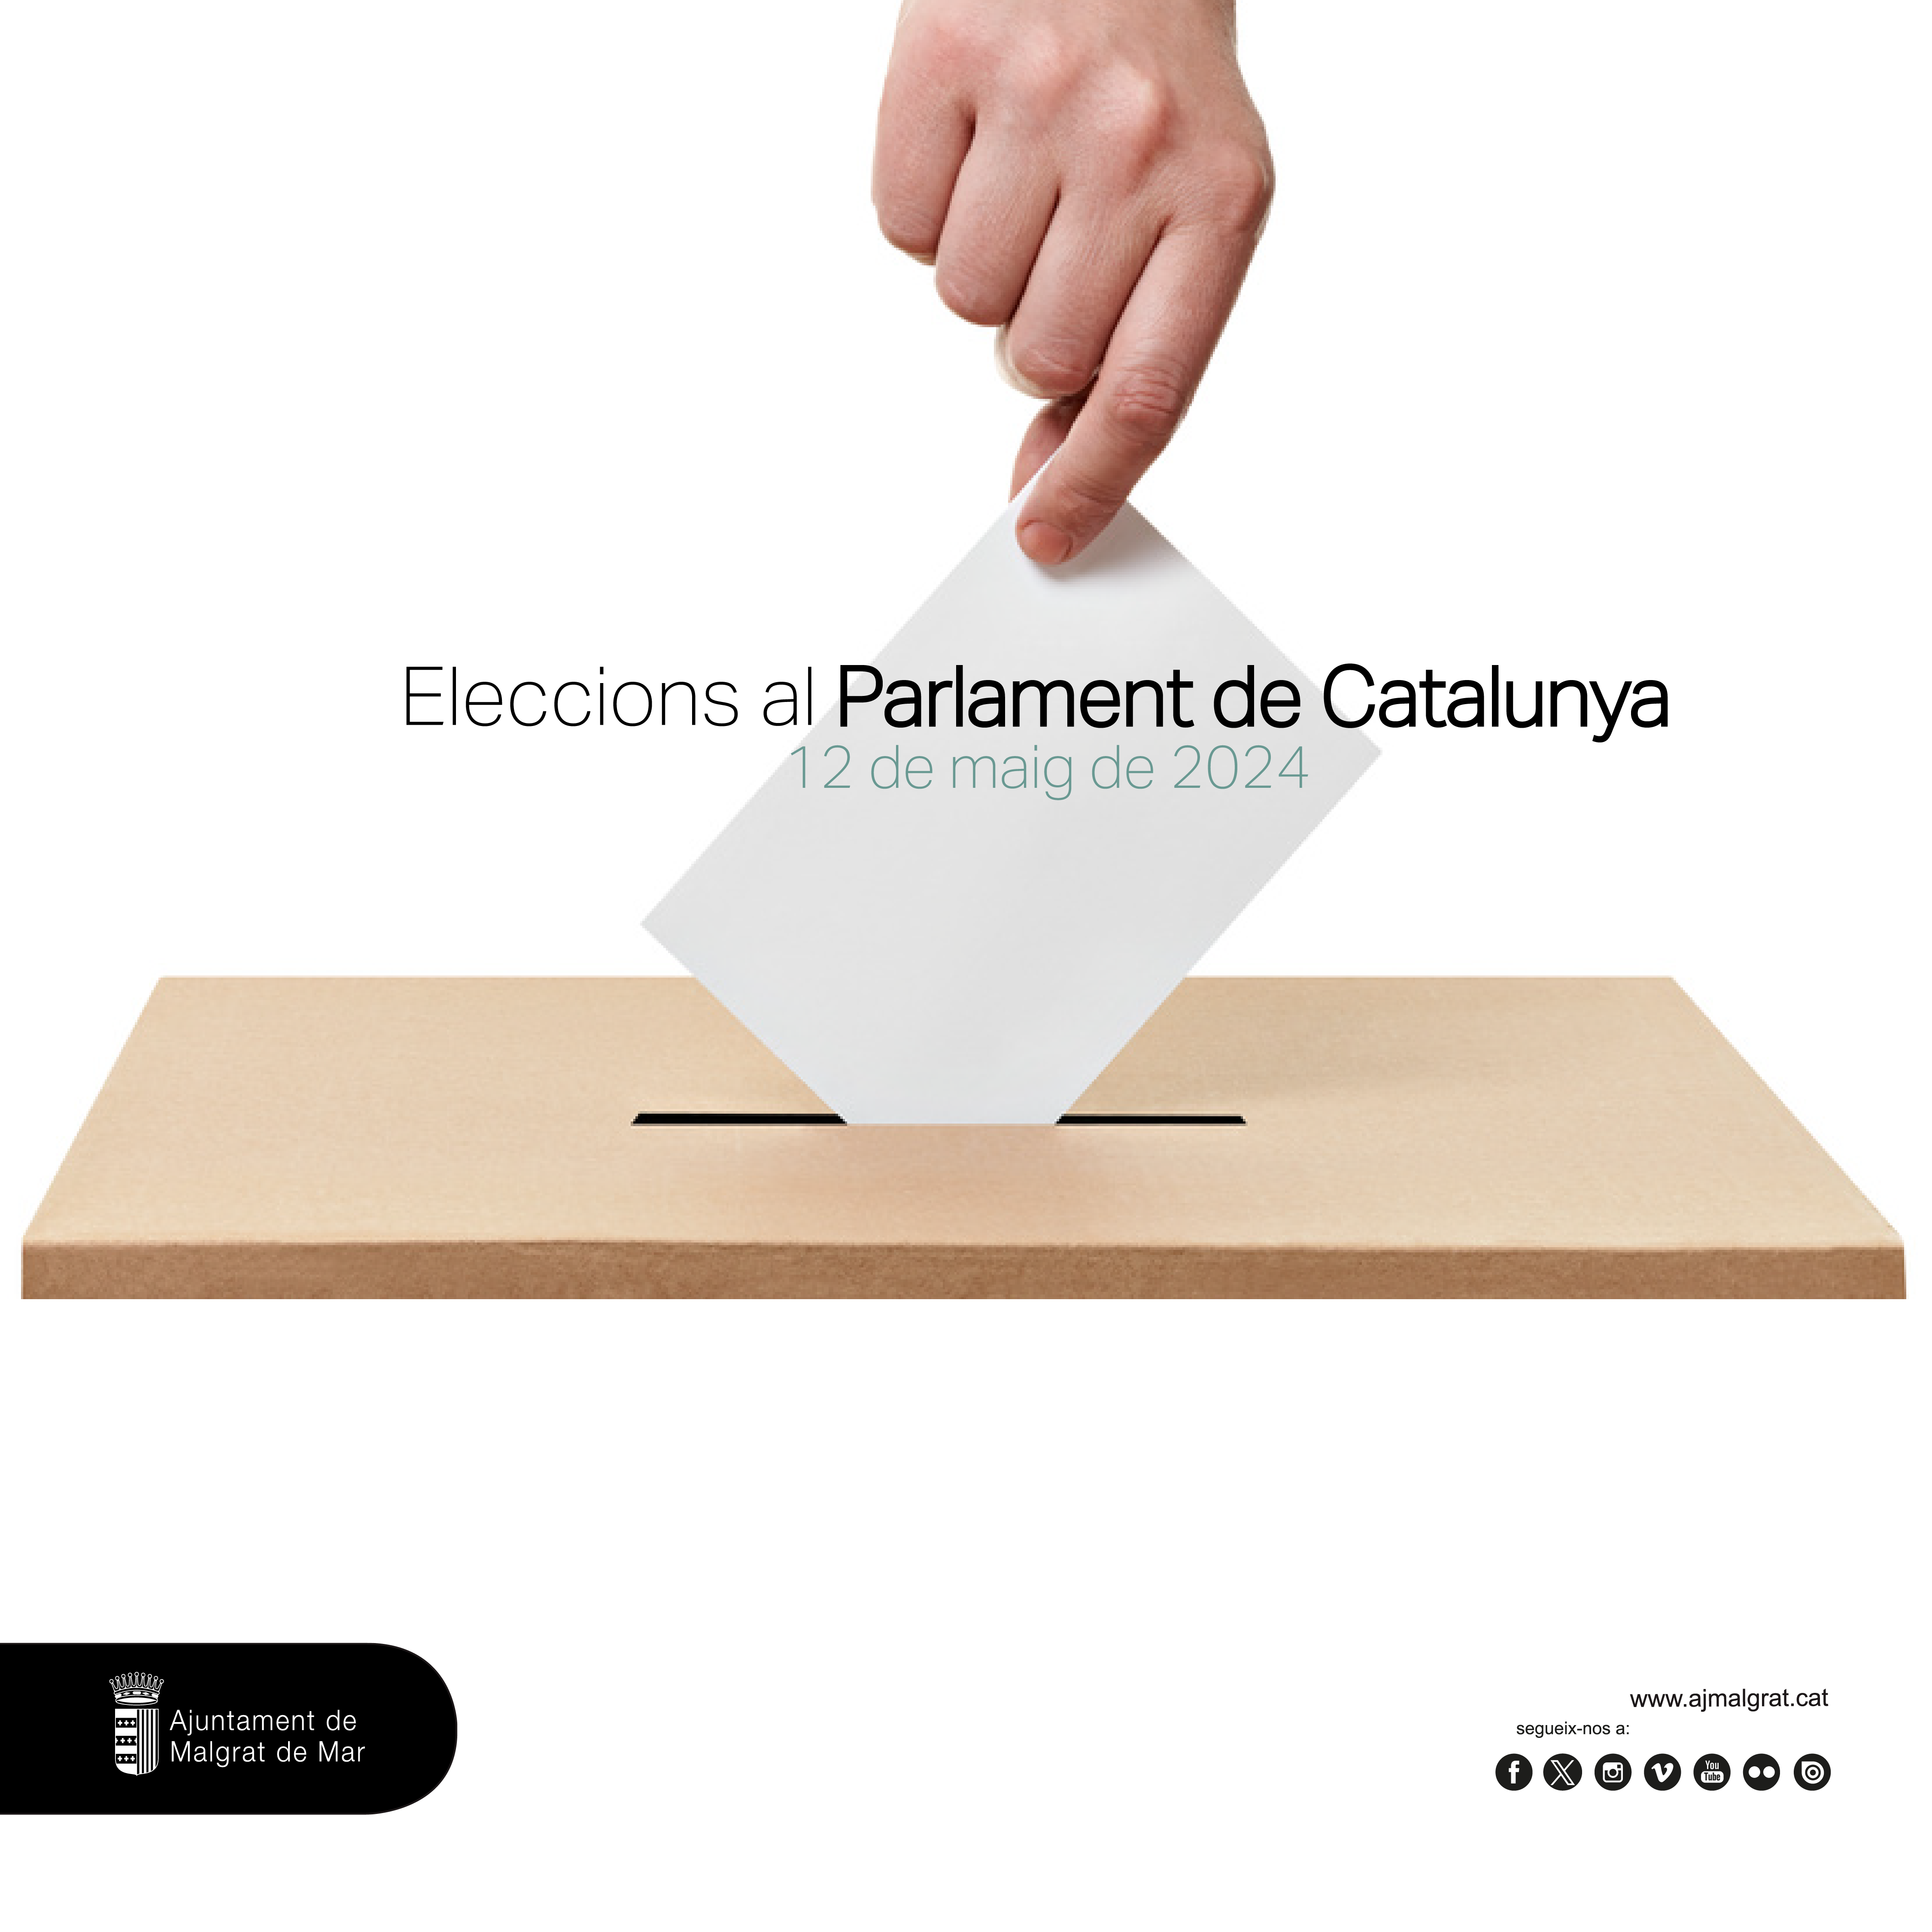 El cens de les Eleccions al Parlament del 12 de maig es pot consultar fins a l'1 d'abril